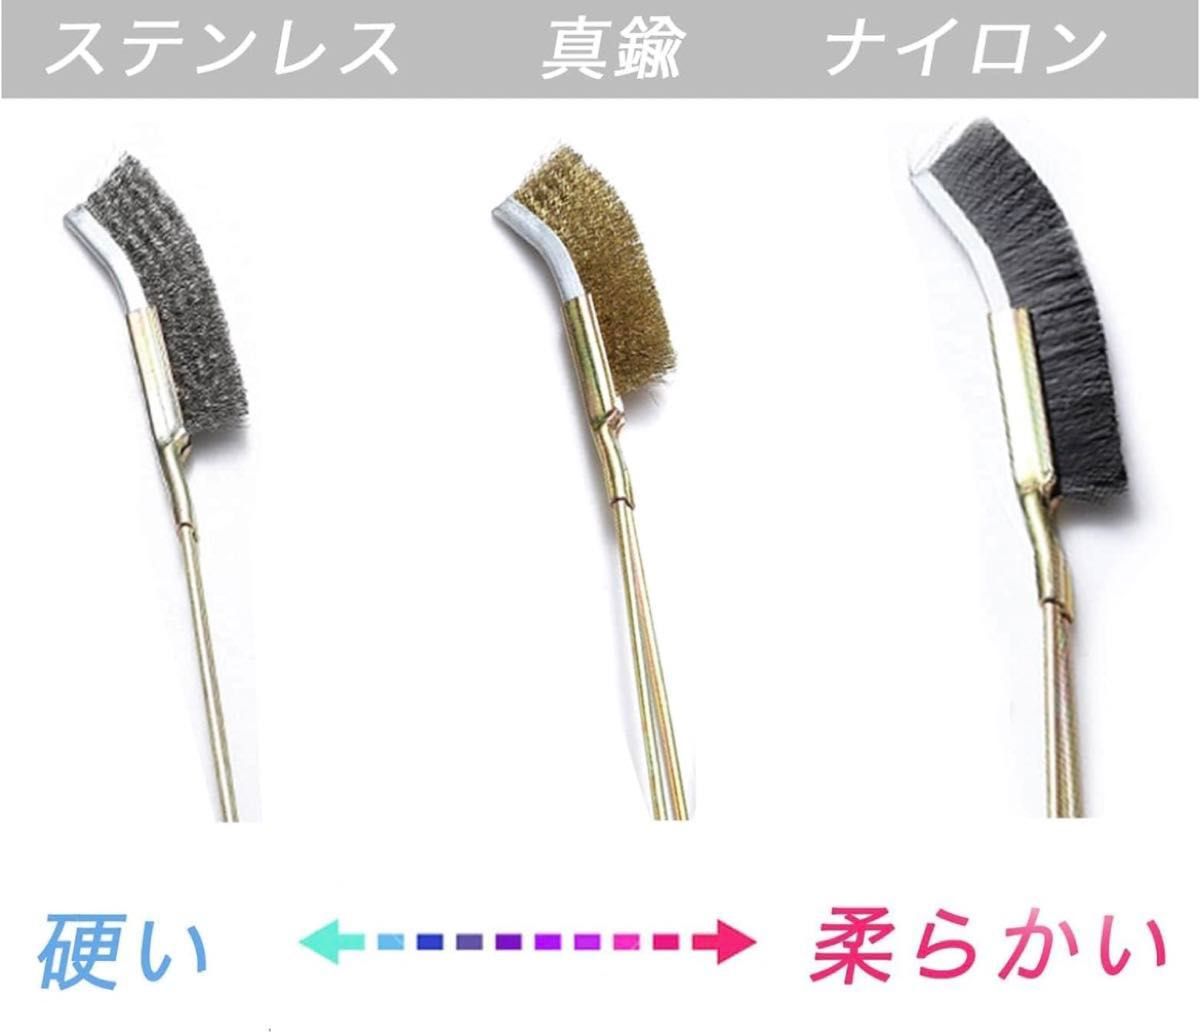 【20本セット】PIENSE ワイヤーブラシ 真鍮ブラシ 掃除